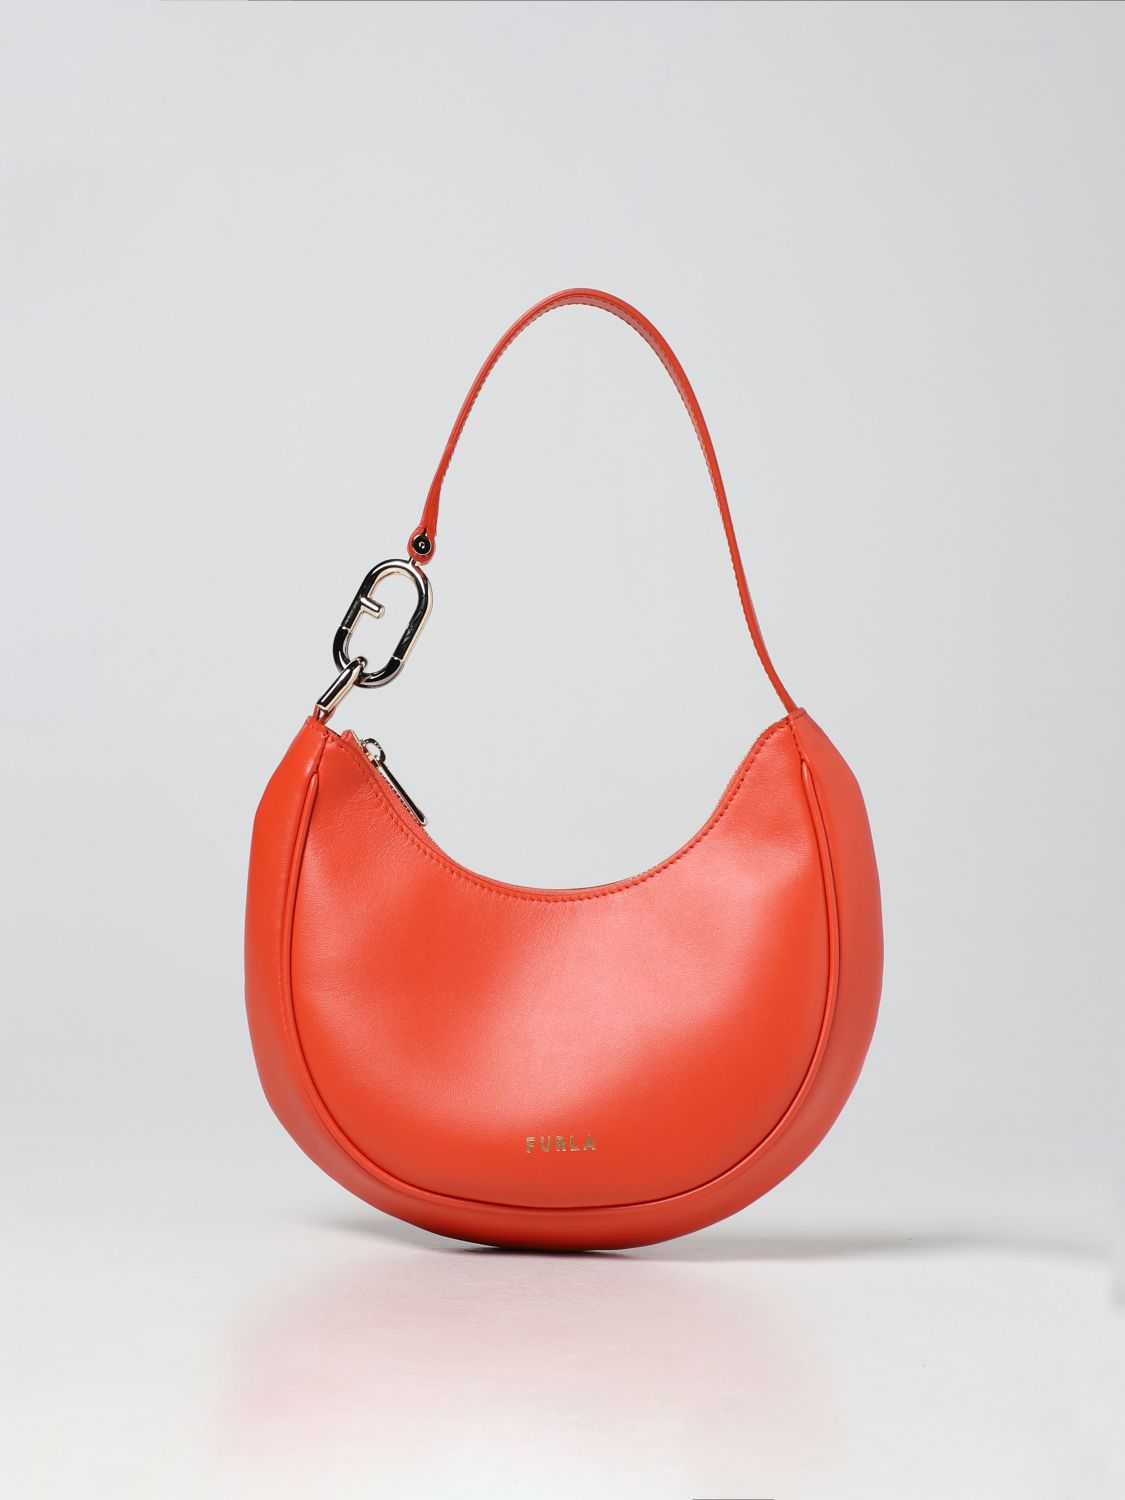 FURLA: Spring hobo bag in leather - Orange  Furla shoulder bag  WB00475AX0733 online at